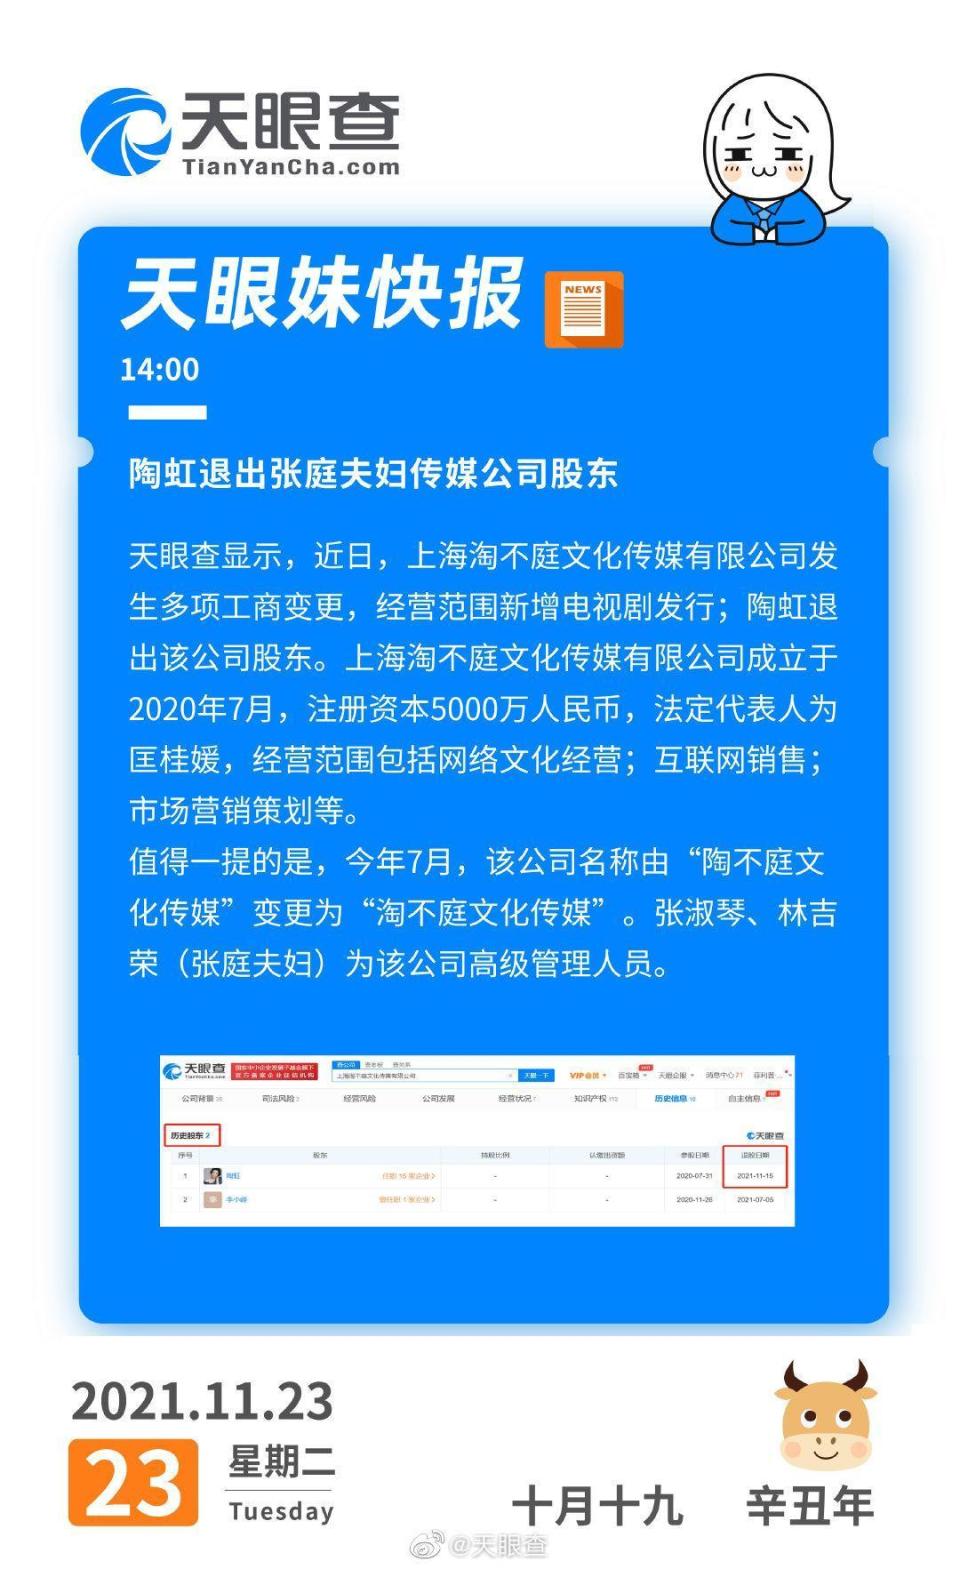 微博「天眼查」PO出陶虹傳退出「淘不庭文化傳媒有限公司」股東的消息。（翻攝微博）